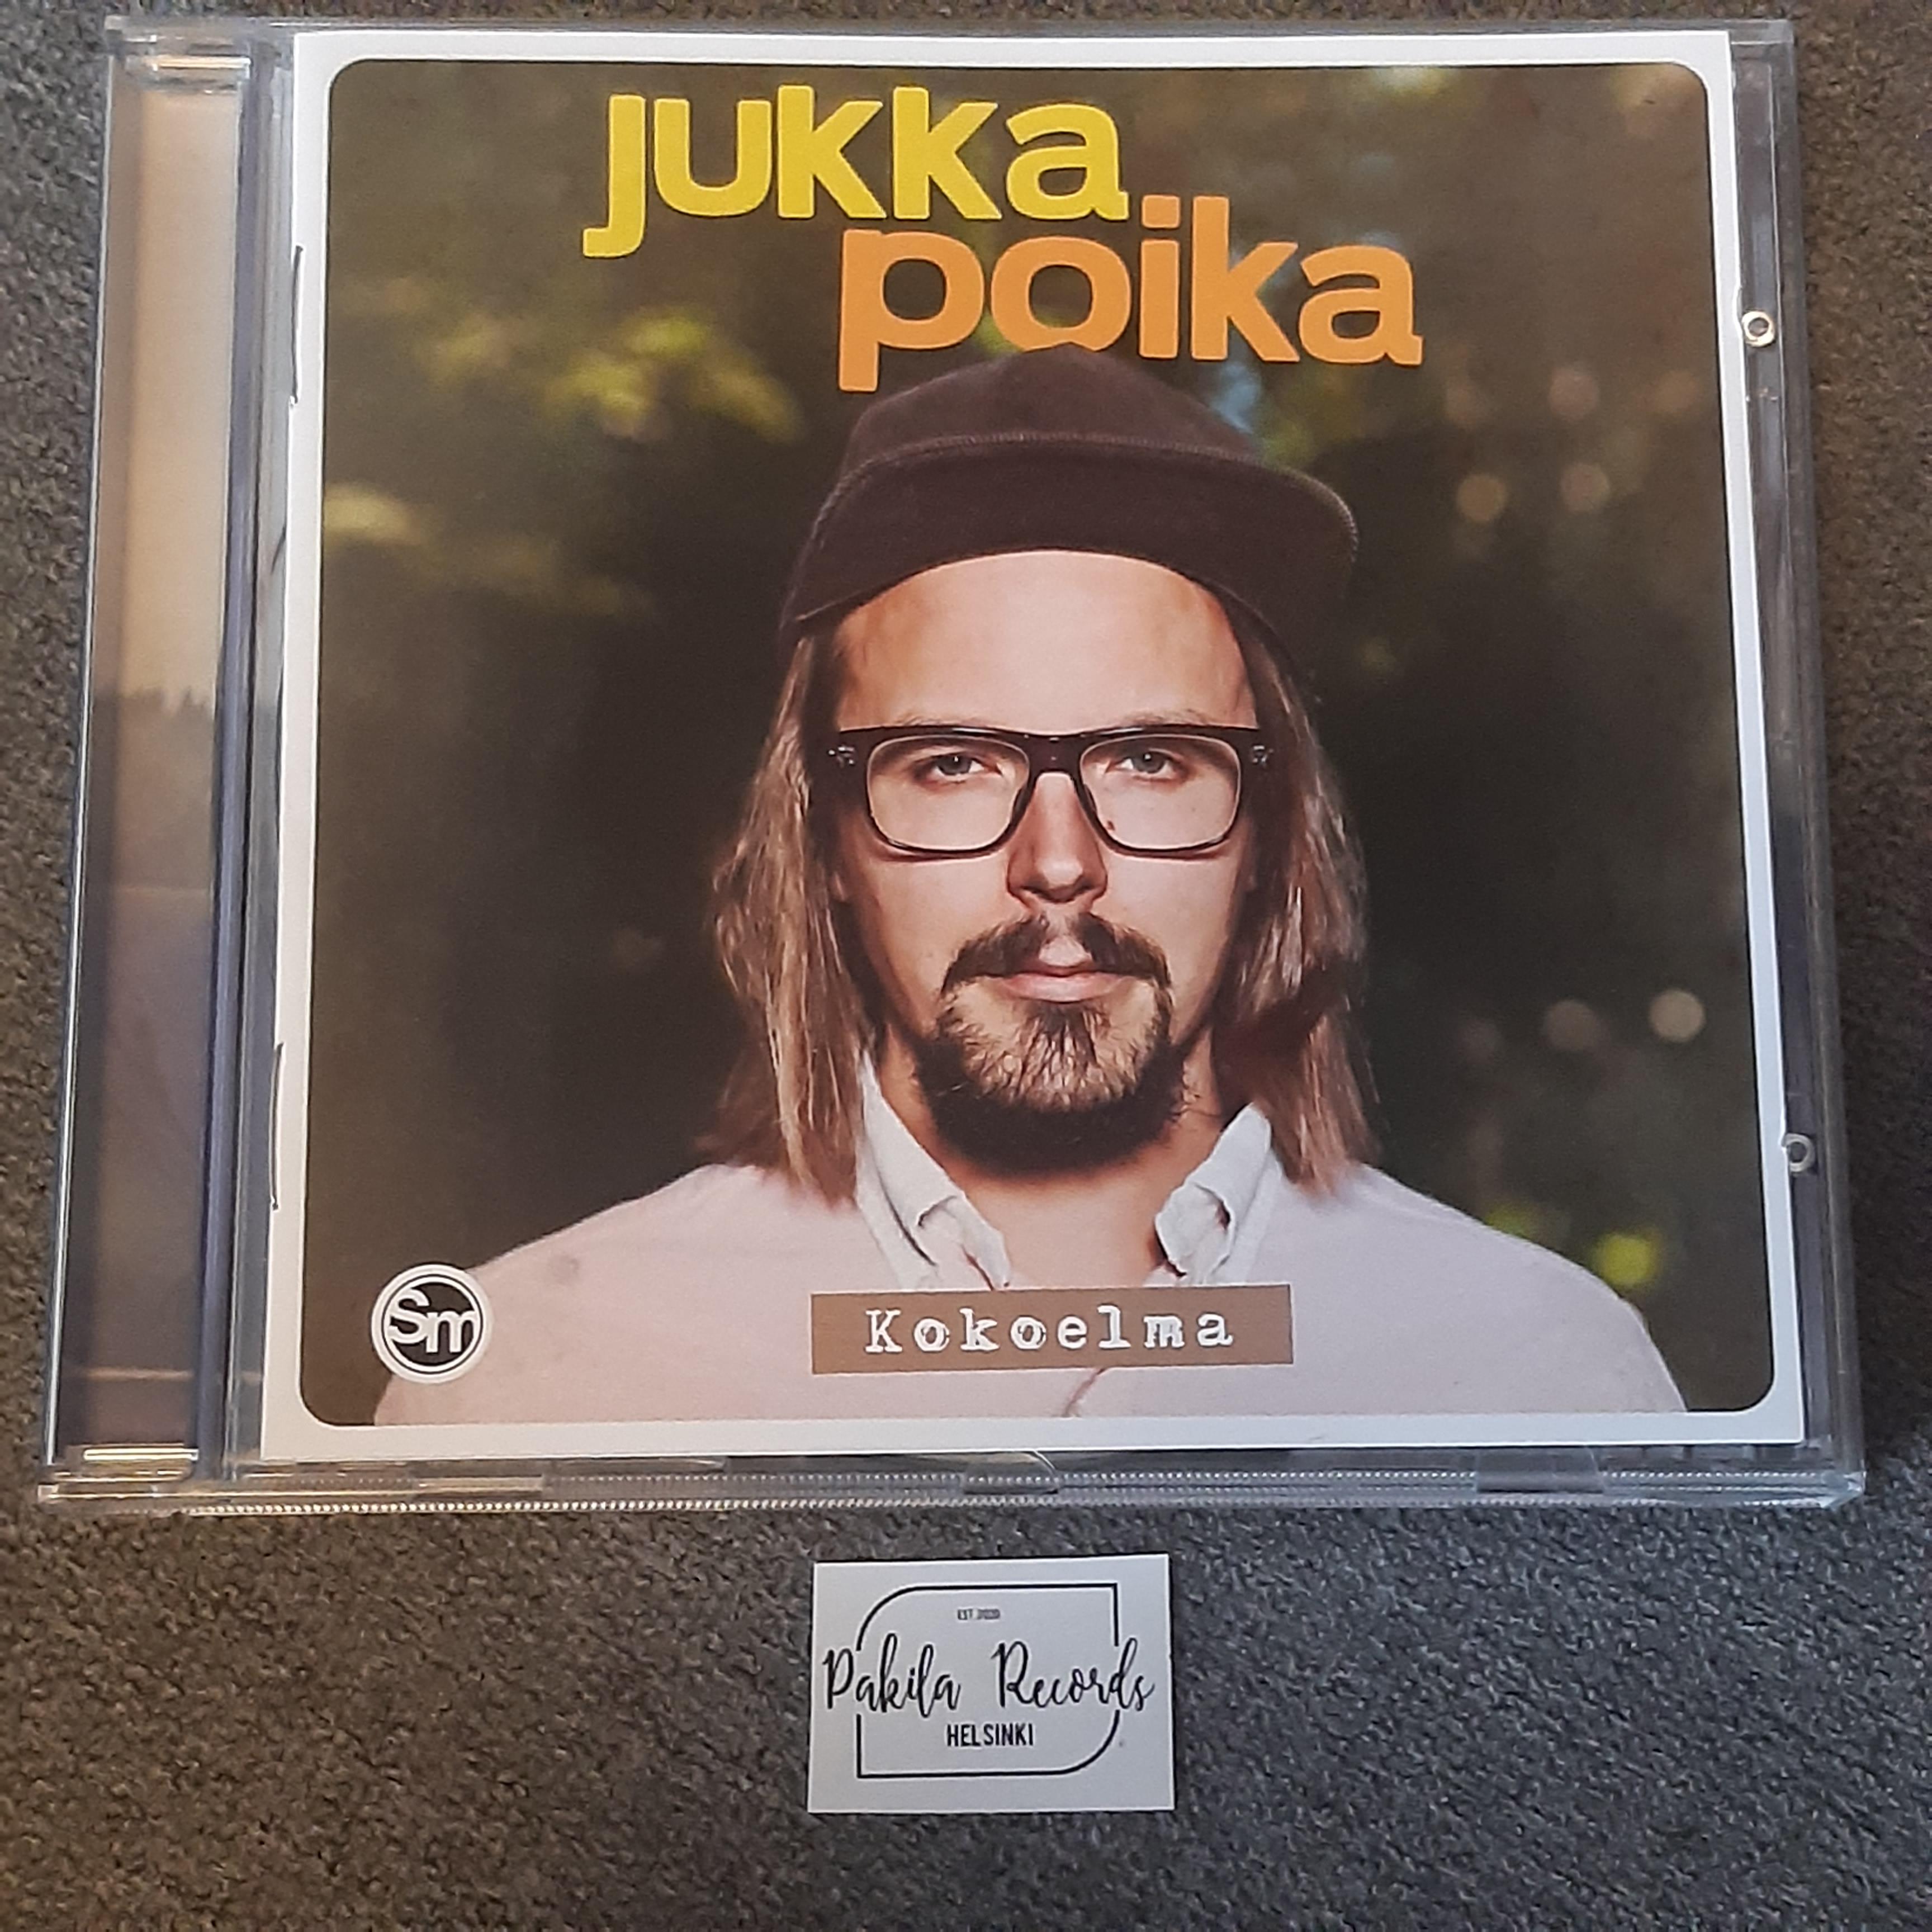 Jukka Poika - Kokoelma - CD (käytetty)